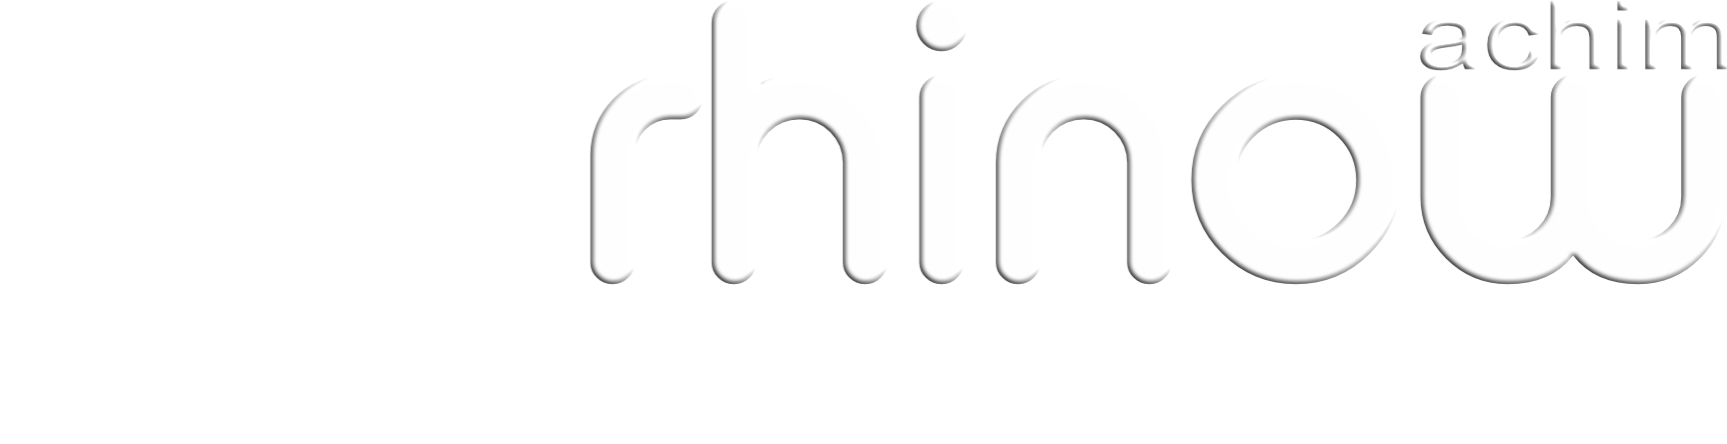 Achim Rhinow Medienproduktion